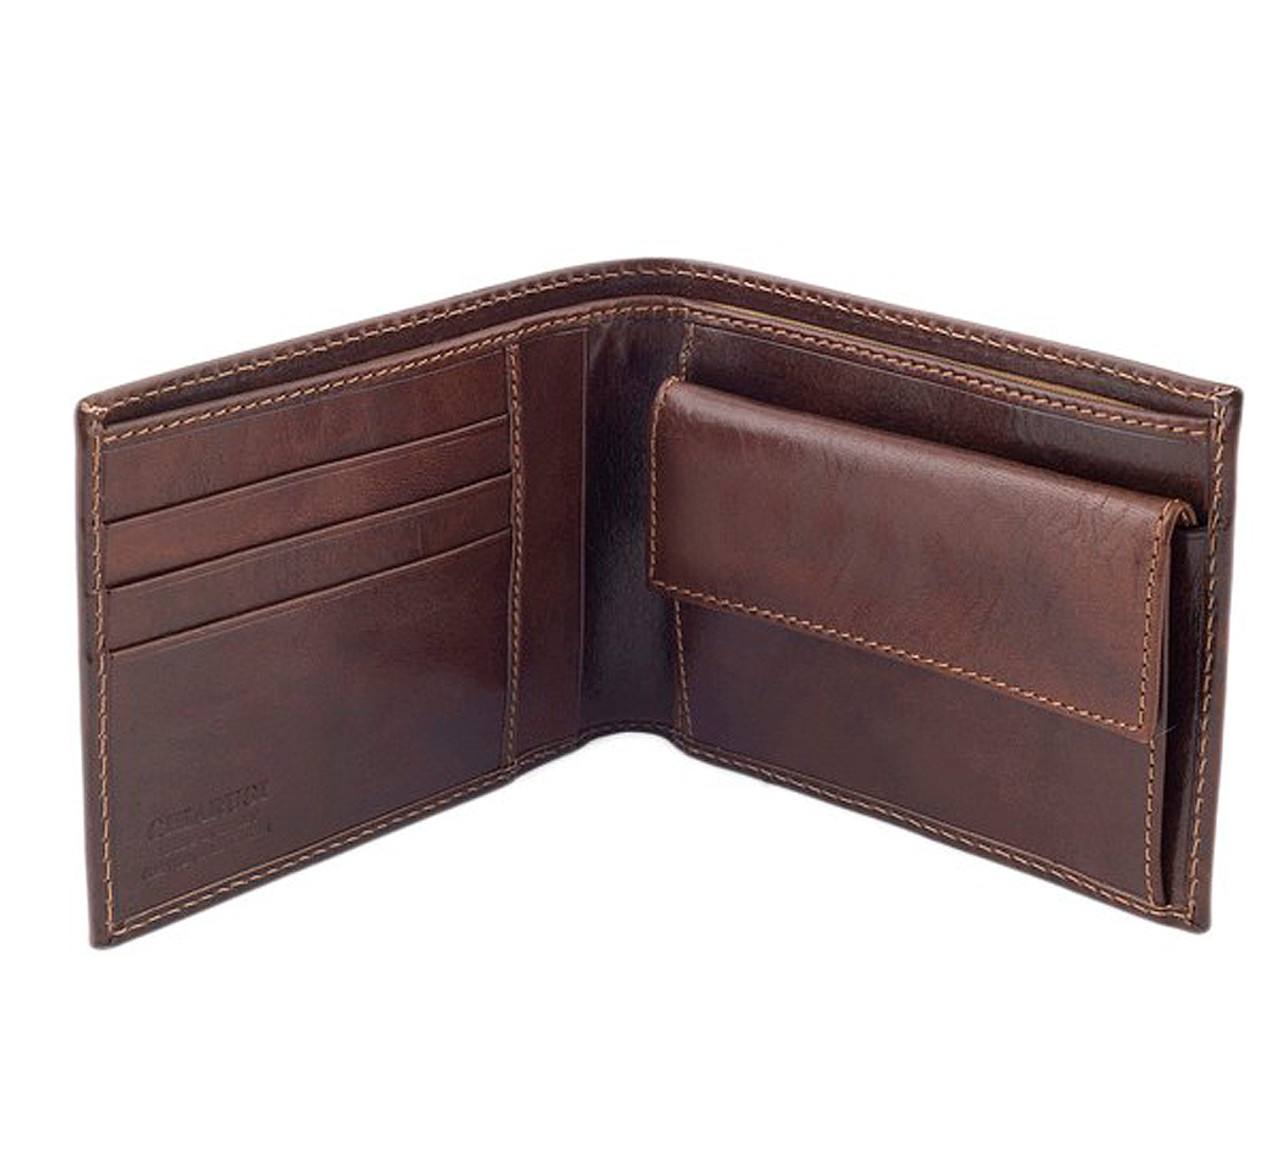 Small wallet men multifunction purse men wallets with coin pocket zipper men  leather wallet male fam…